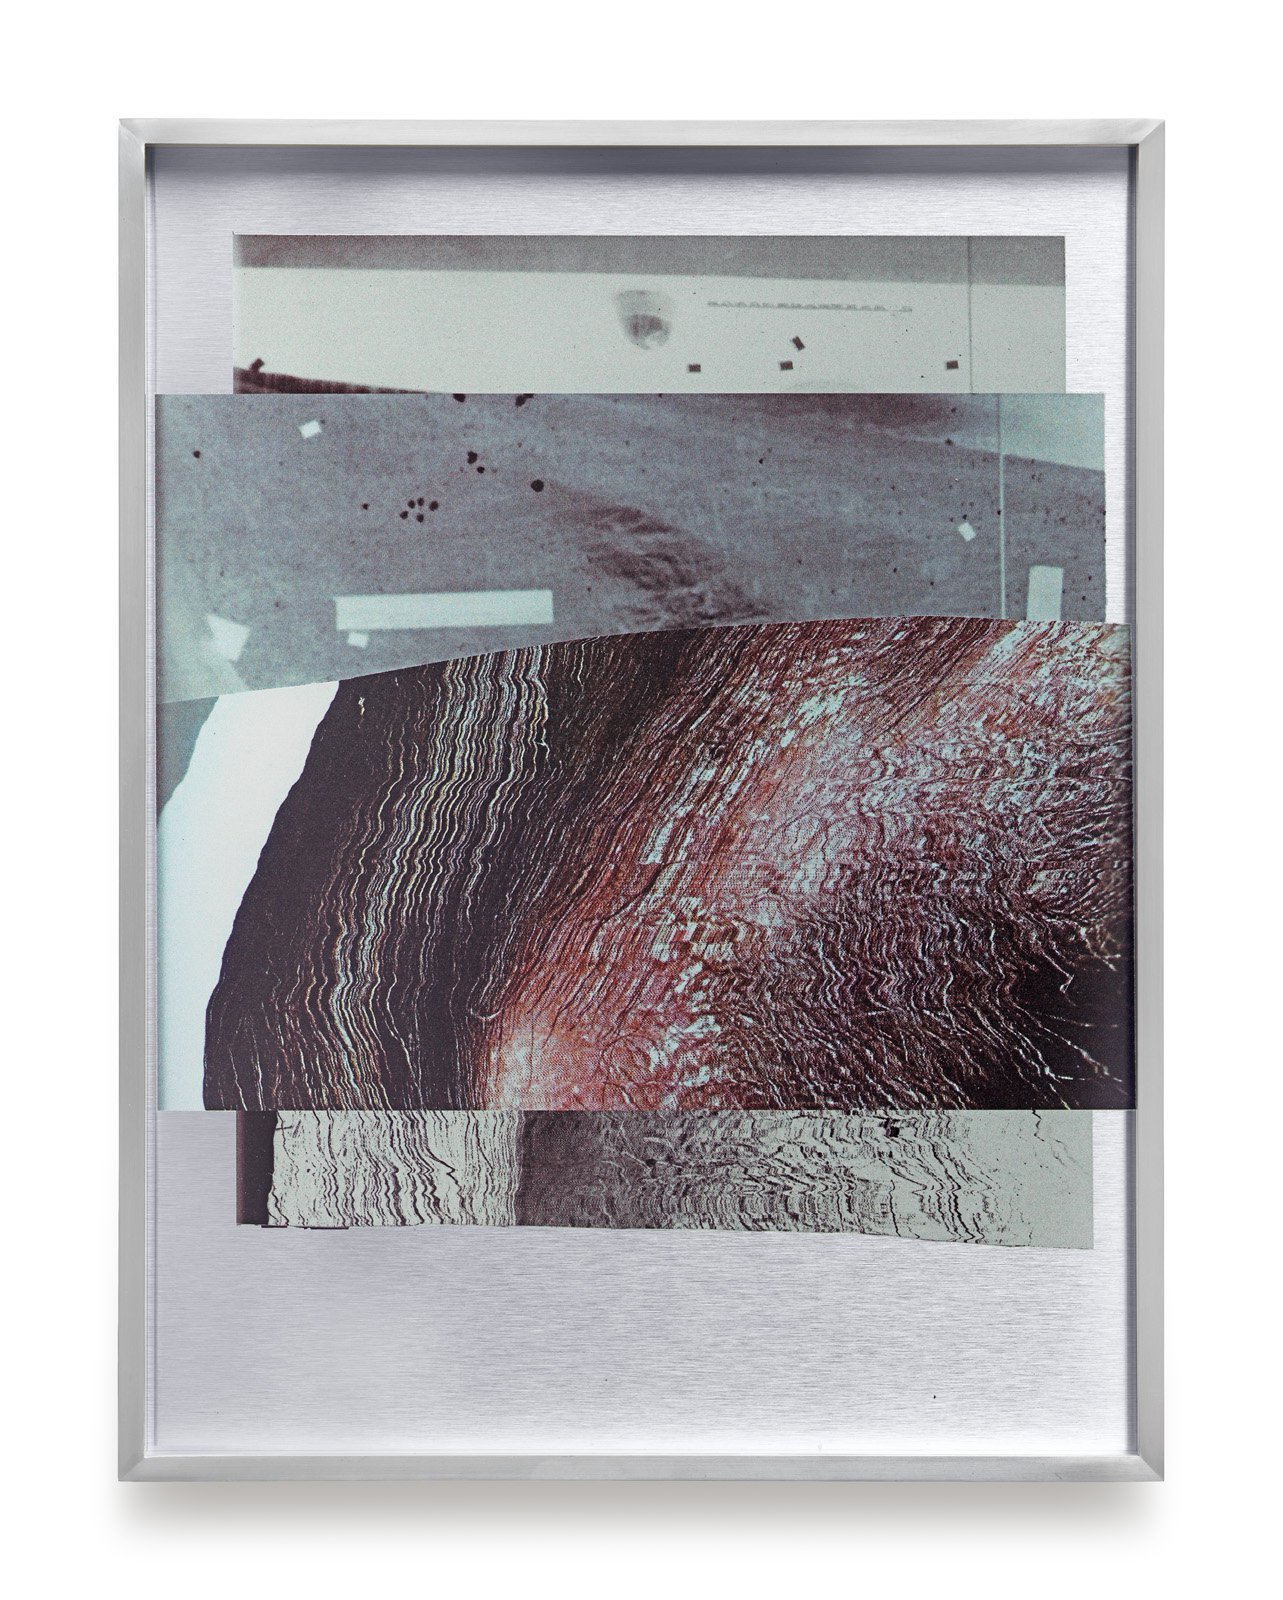 James Richards, Rushes Minotaur 4, inkjet prints on dibond aluminium, 51 x 39 x 4 cm framed (20 1/8 x 15 3/8 x 1 5/8 in framed), 2017